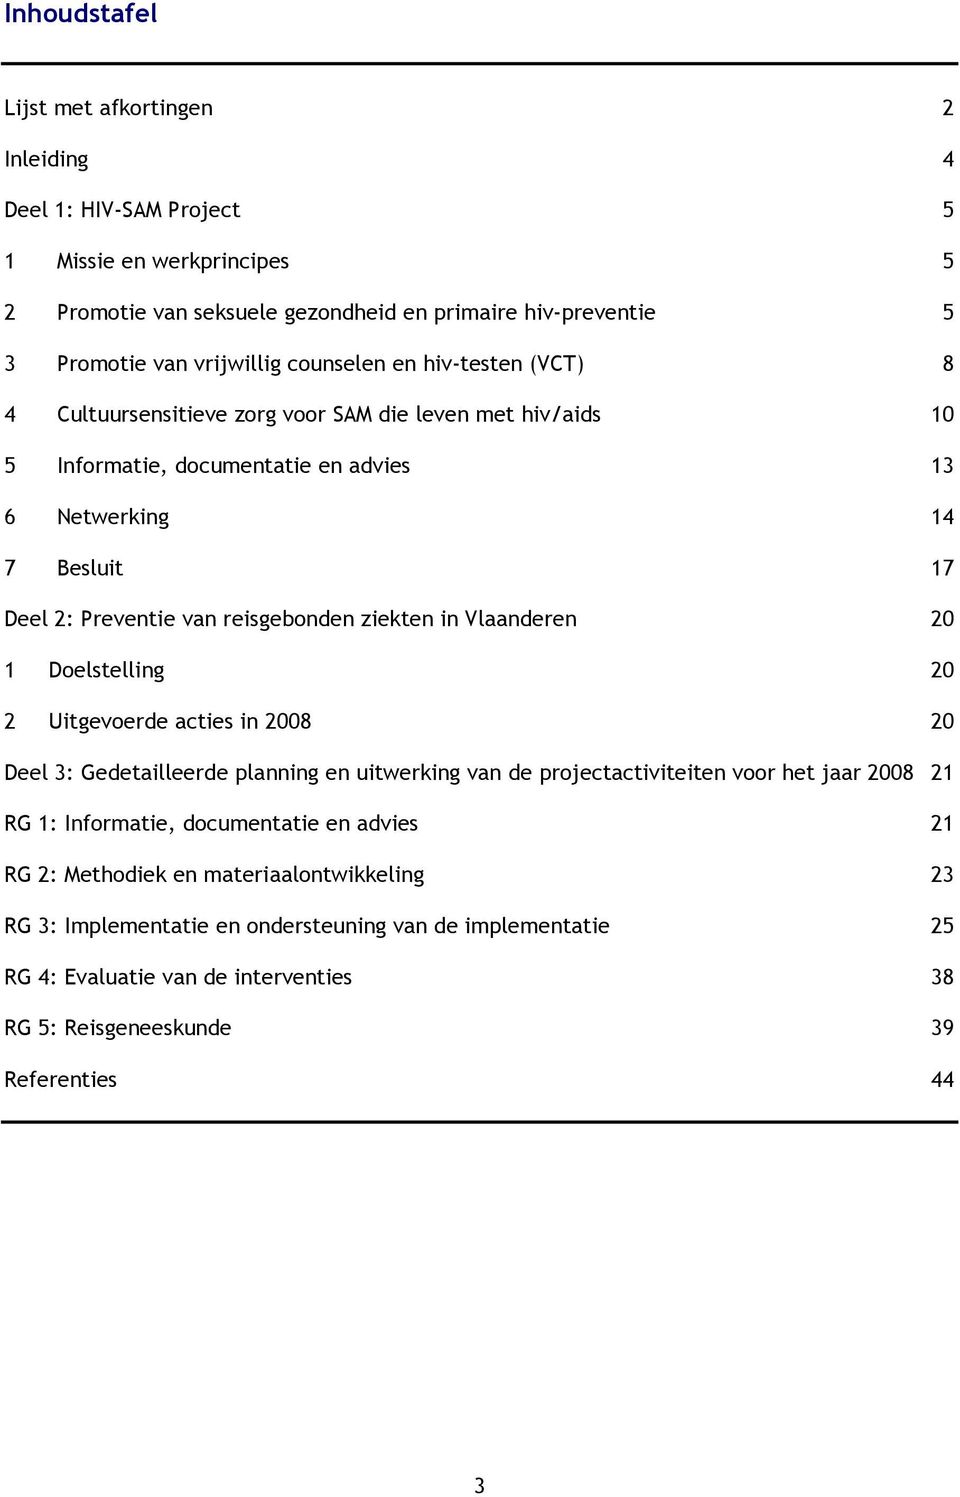 ziekten in Vlaanderen 20 1 Doelstelling 20 2 Uitgevoerde acties in 2008 20 Deel 3: Gedetailleerde planning en uitwerking van de projectactiviteiten voor het jaar 2008 21 RG 1: Informatie,